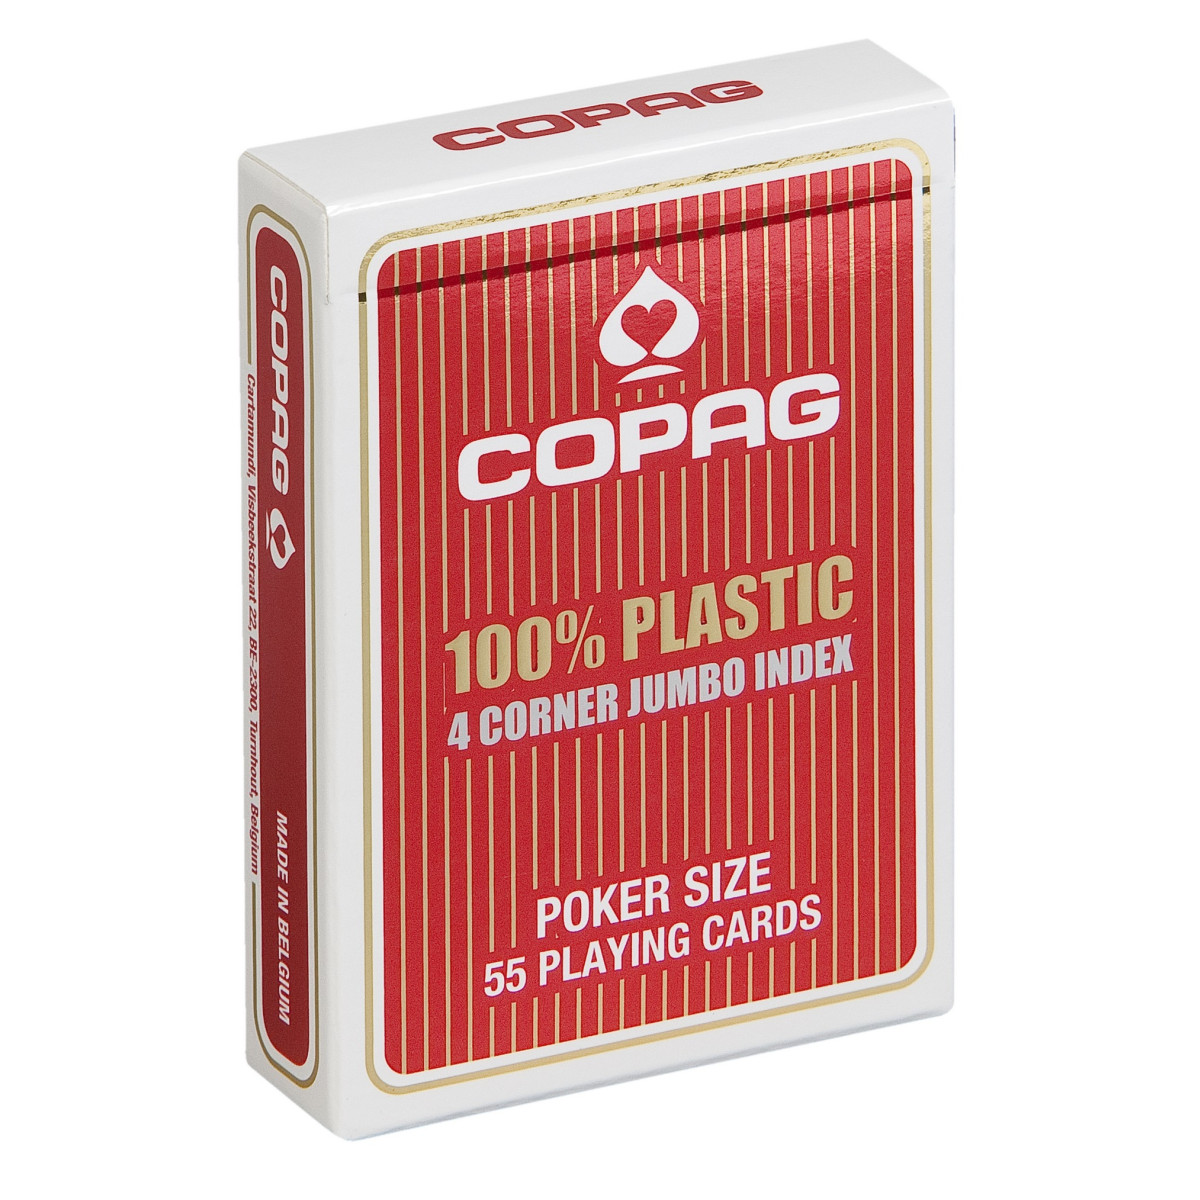 Haarzelf Trouwens bijlage Pokerkaarten Copag 100% plastic 4 Jumbo Rood kopen op Amusement.be